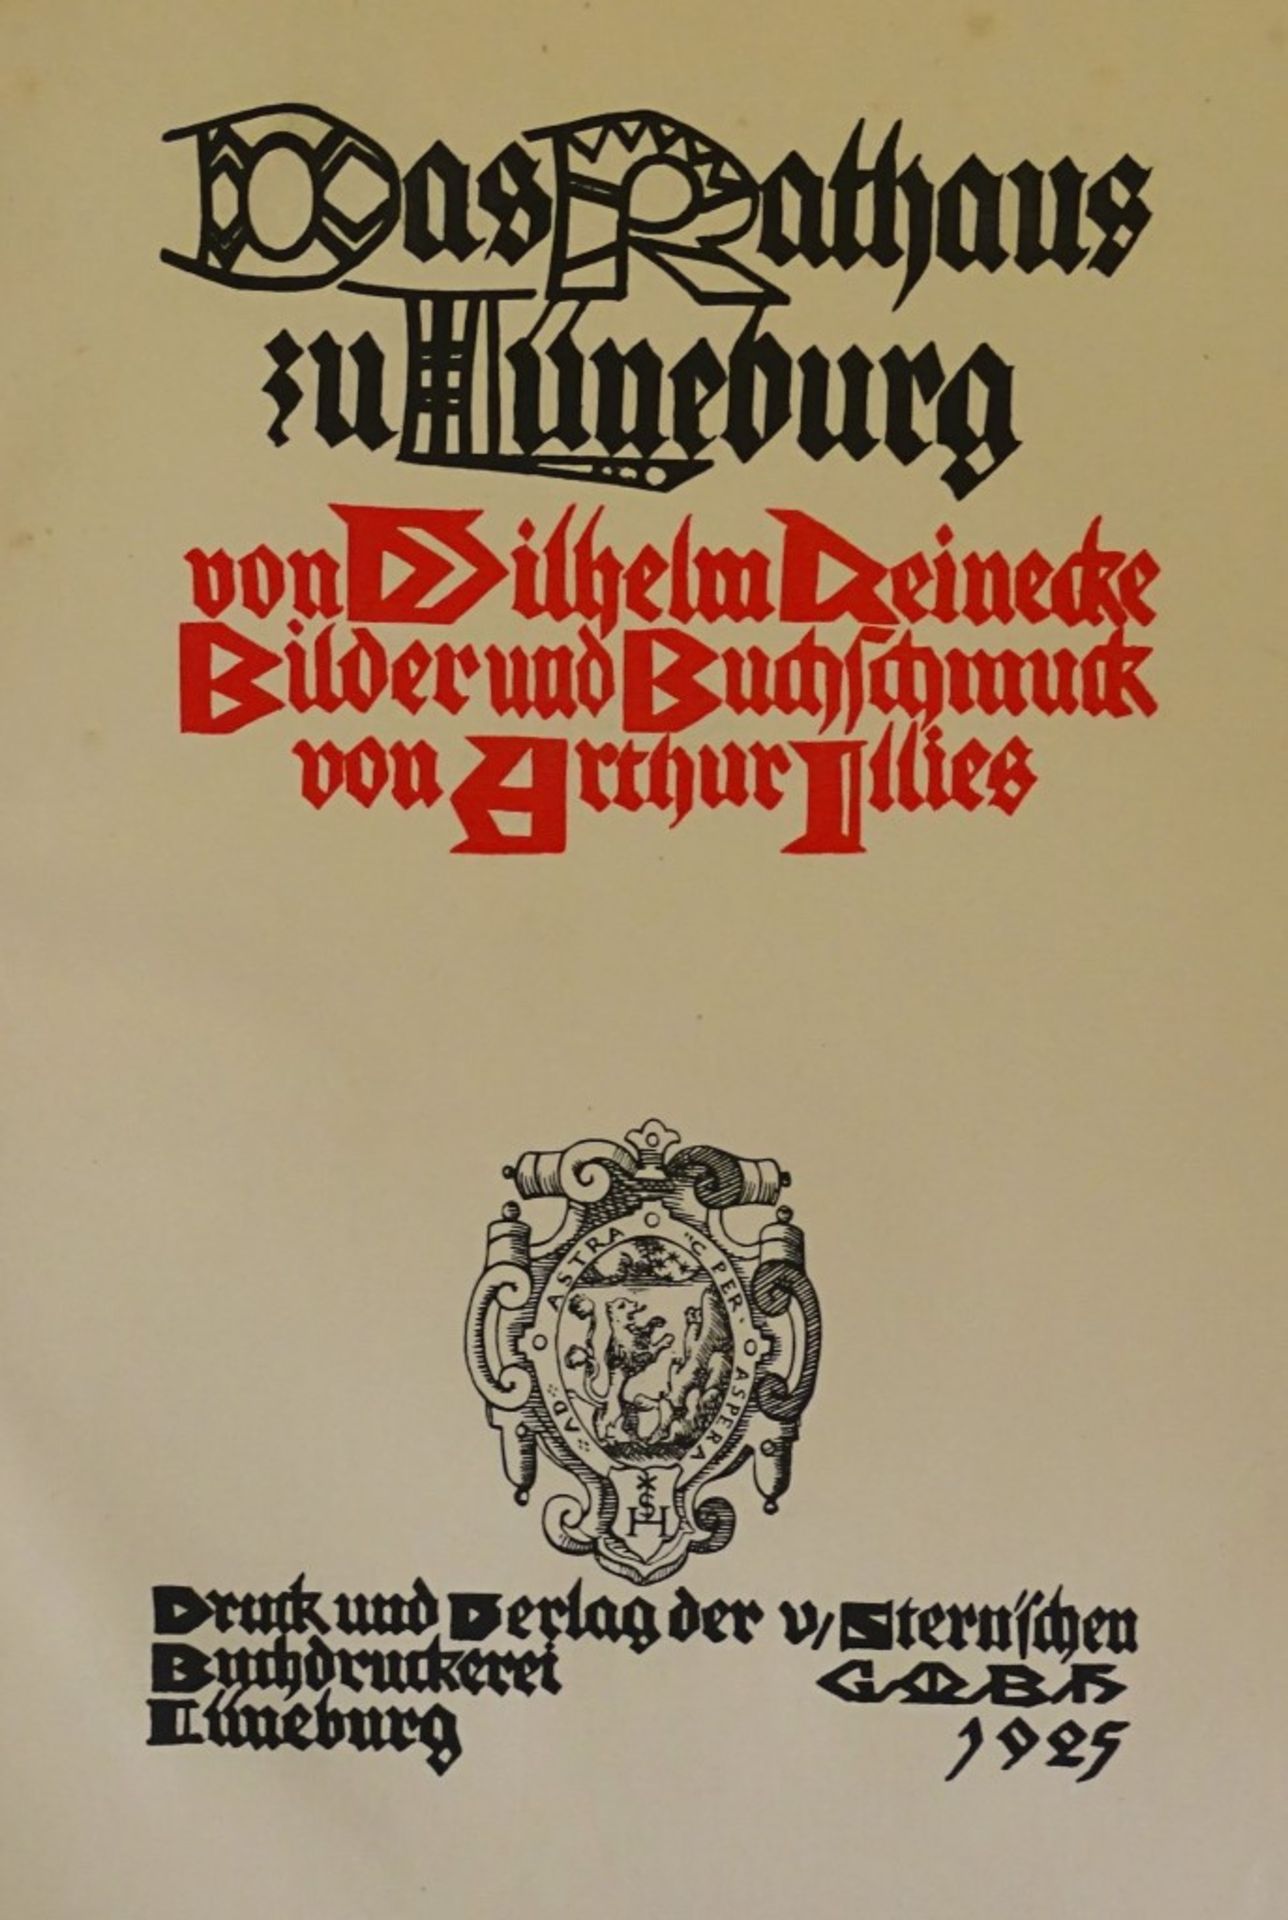 "Das Rathaus zu Lüneburg", von Wilhelm Reinecke,192 - Image 2 of 6